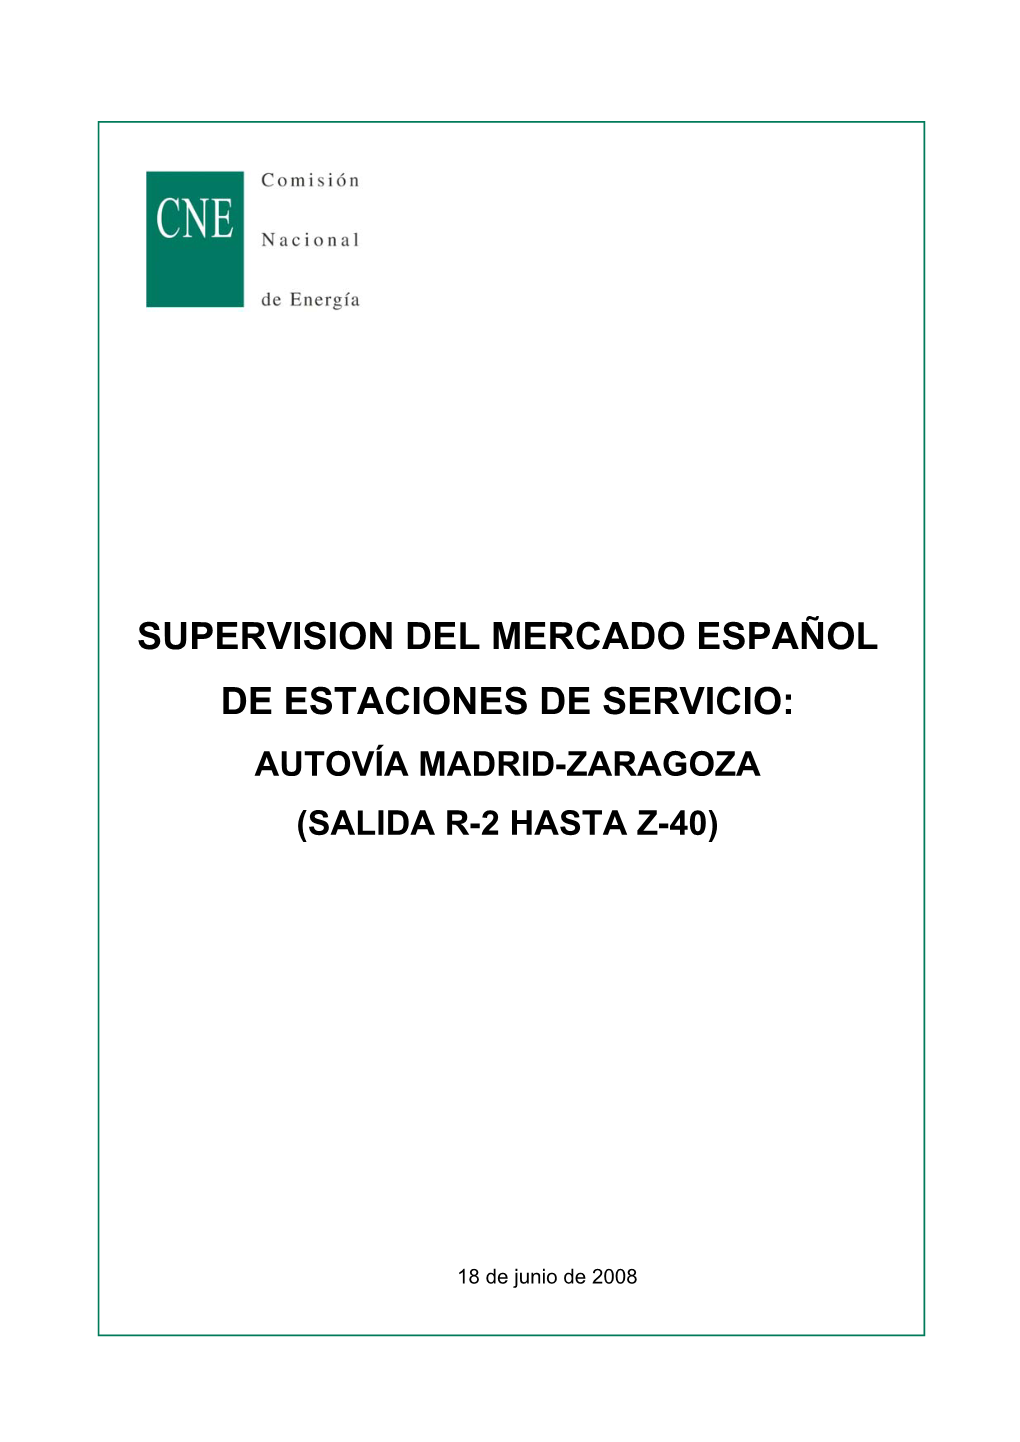 Supervision Del Mercado Español De Estaciones De Servicio: Autovía Madrid-Zaragoza (Salida R-2 Hasta Z-40)